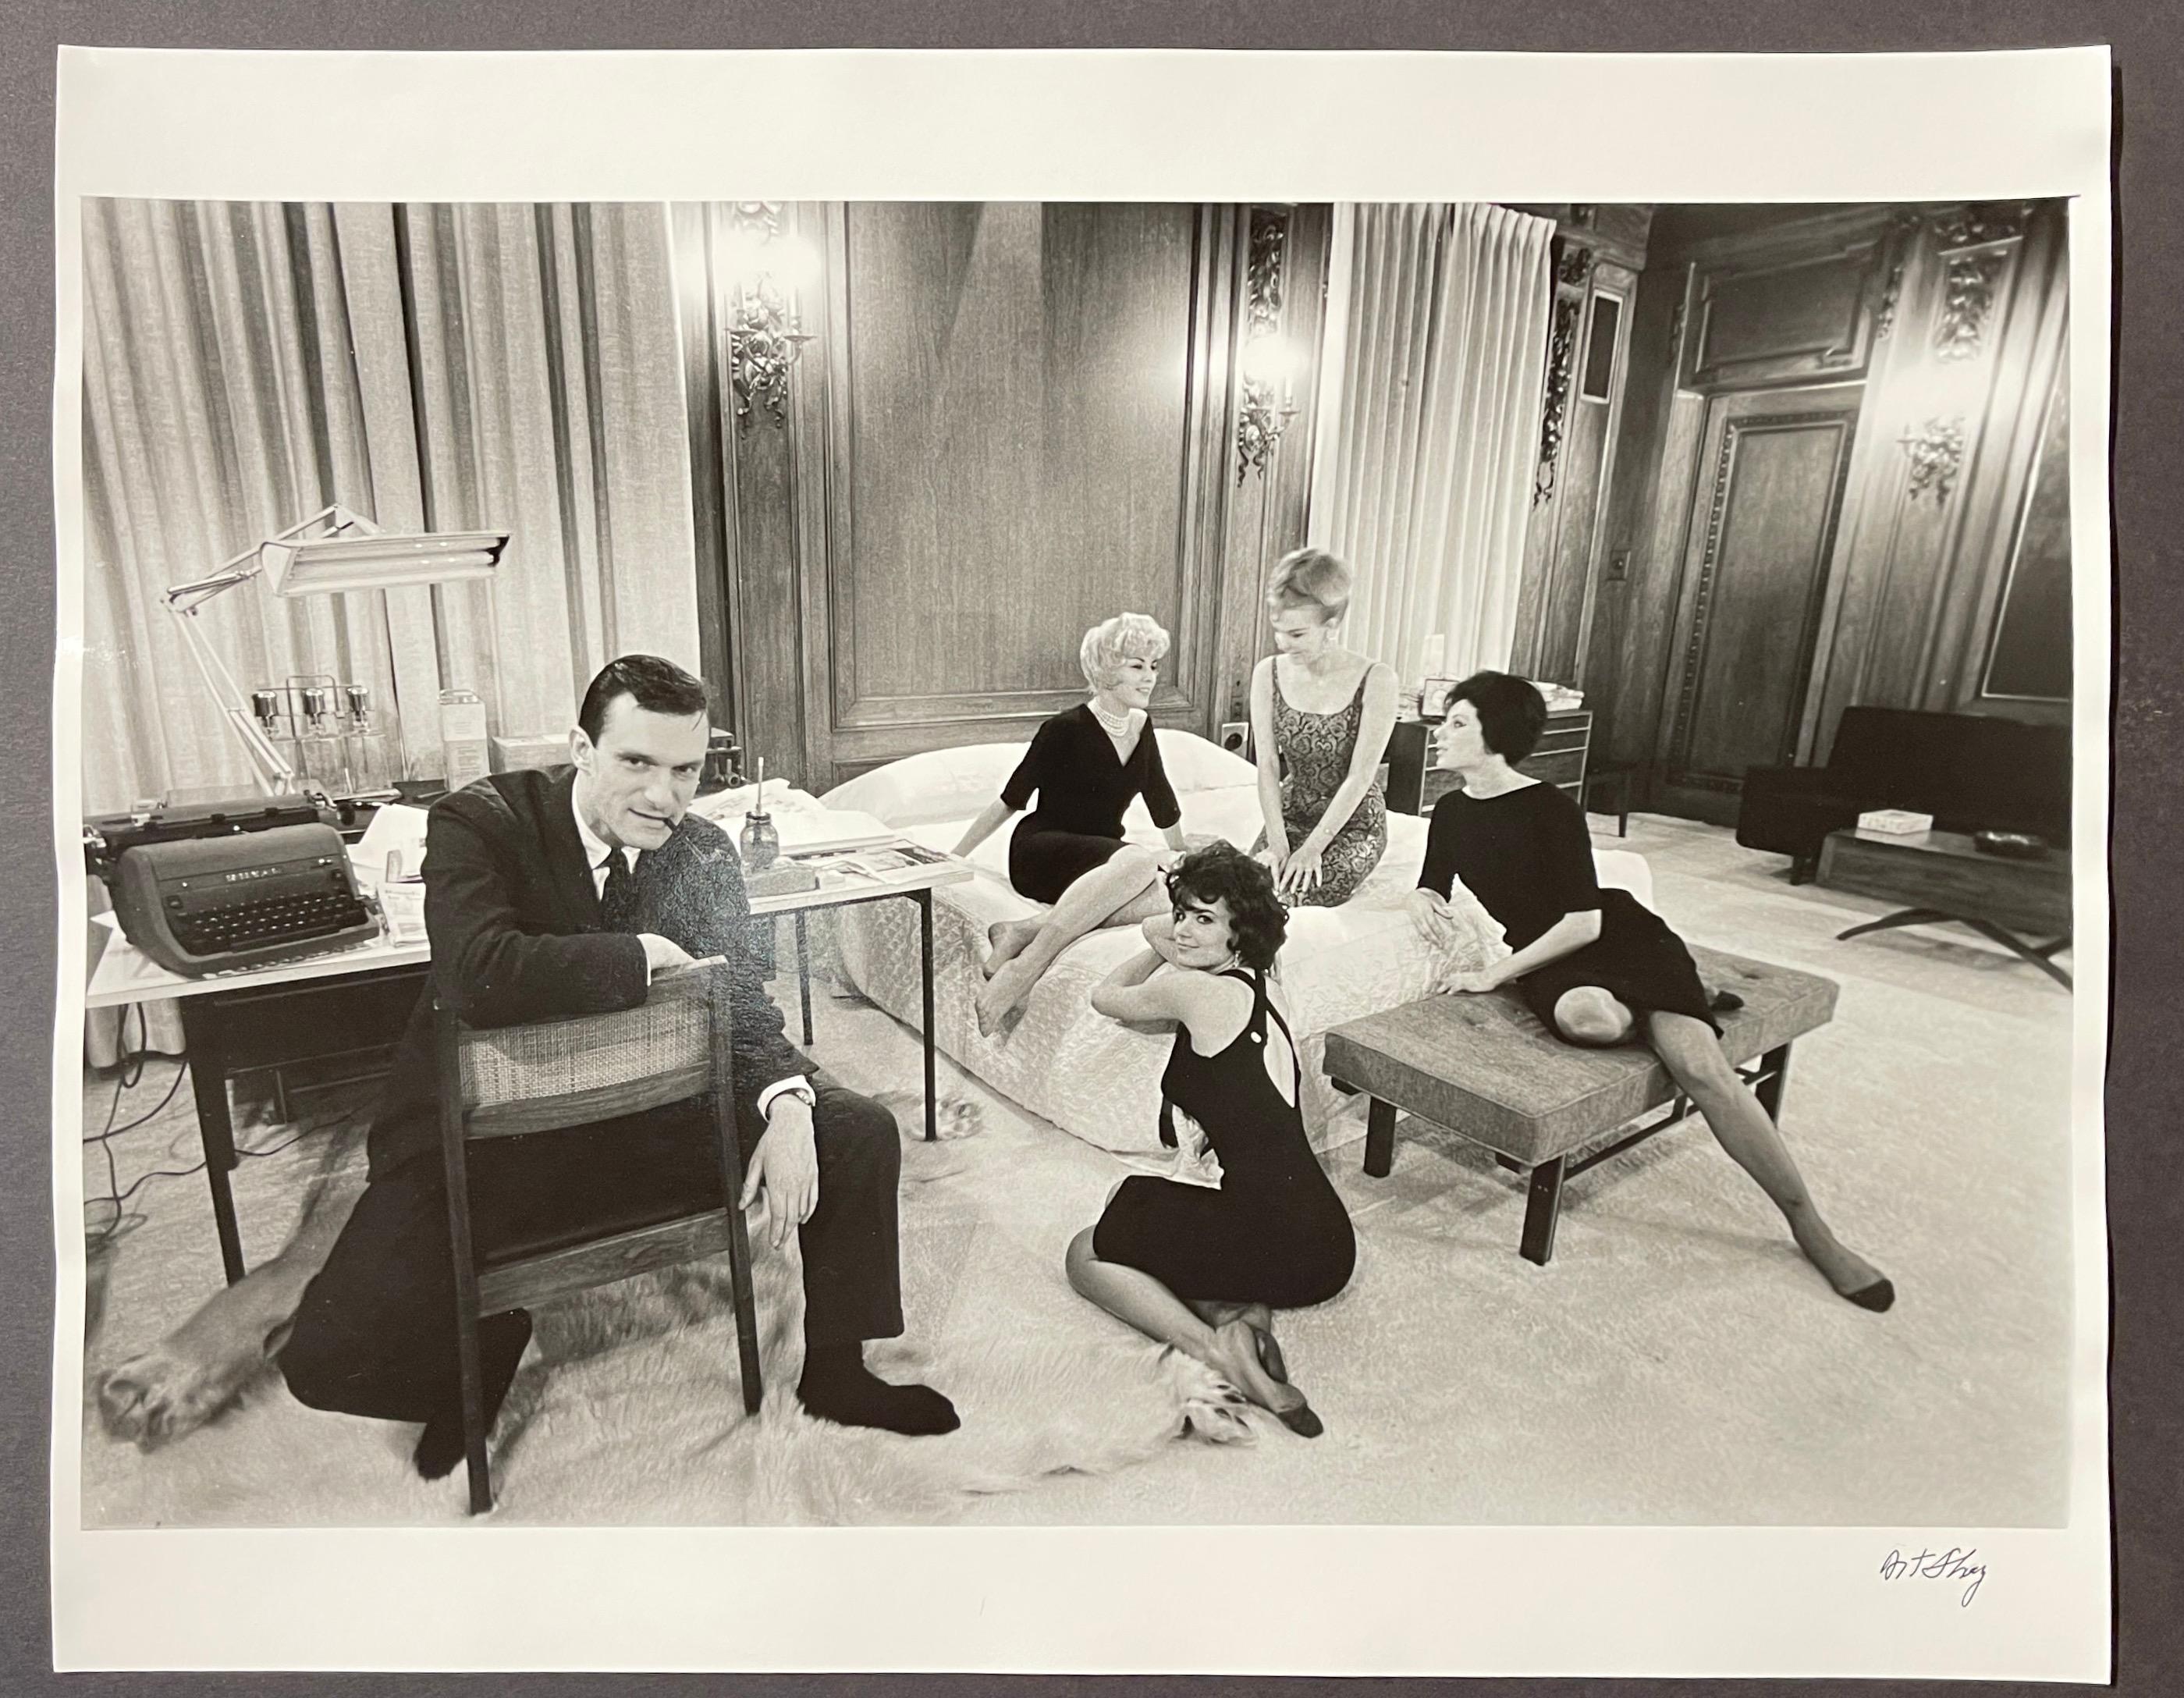 Hugh Hefner in His Bedroom Office, Chicago 1961, Schwarz-Weiß-Fotografie – Photograph von Art Shay